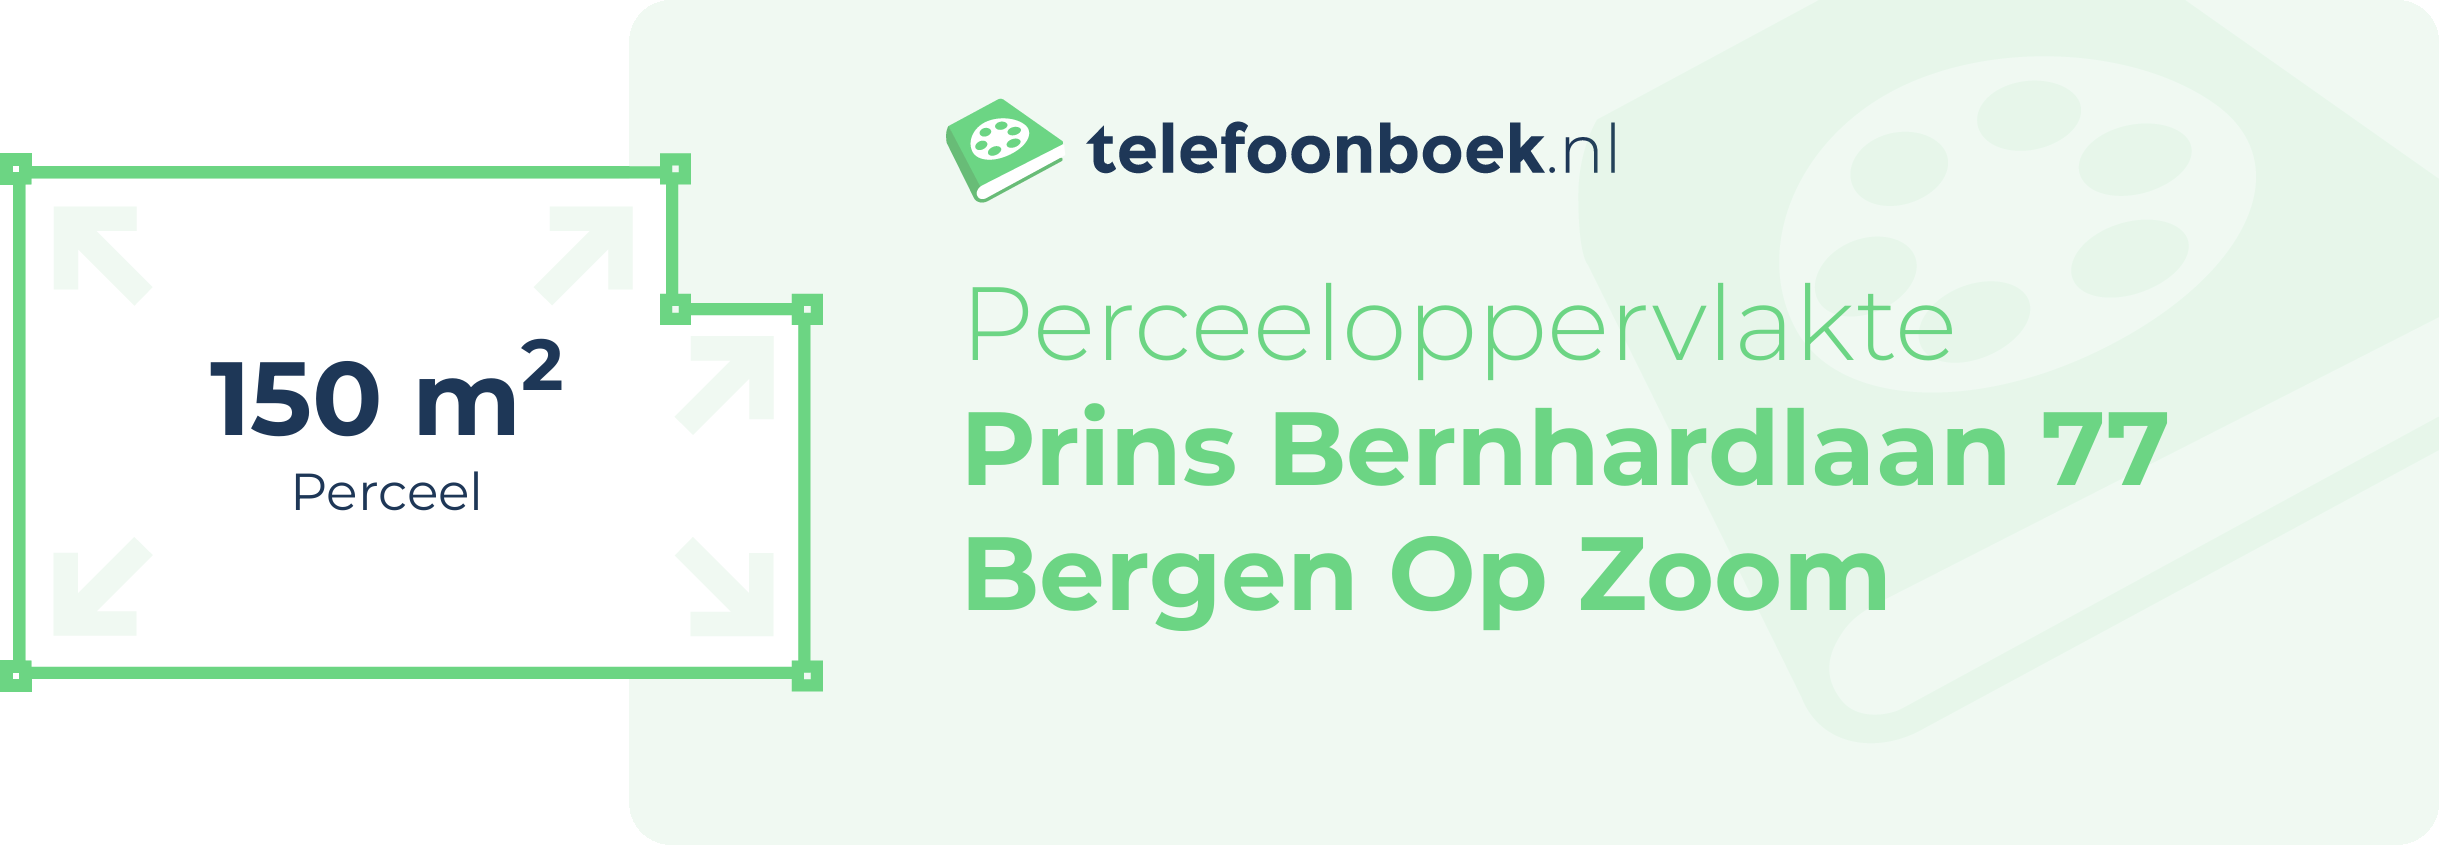 Perceeloppervlakte Prins Bernhardlaan 77 Bergen Op Zoom